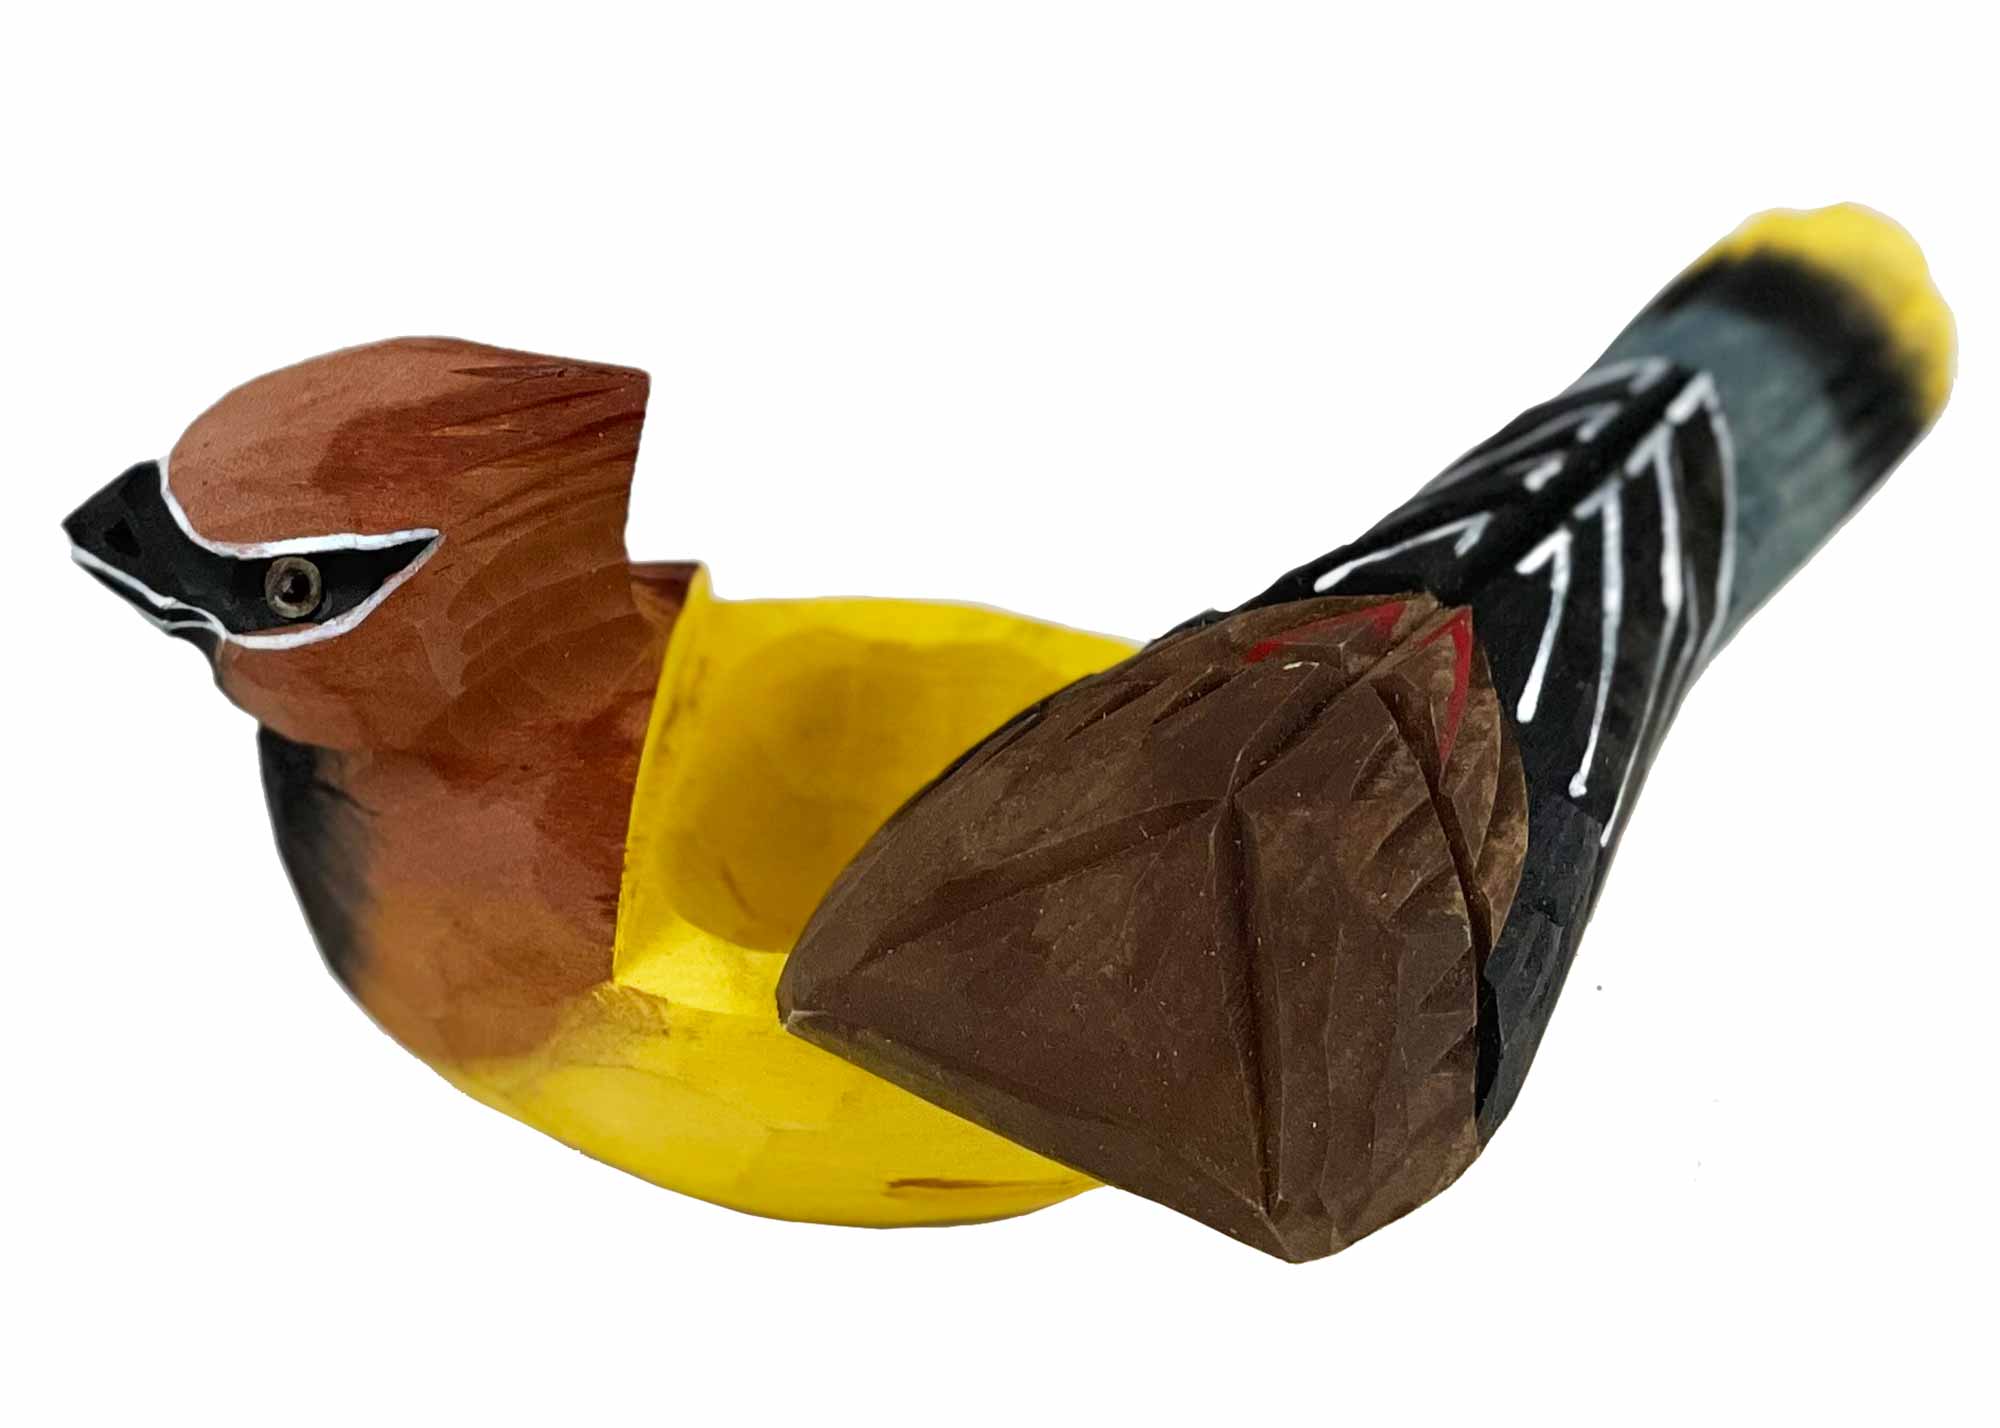 Buy Waxwing Bird Box at GoldenCockerel.com